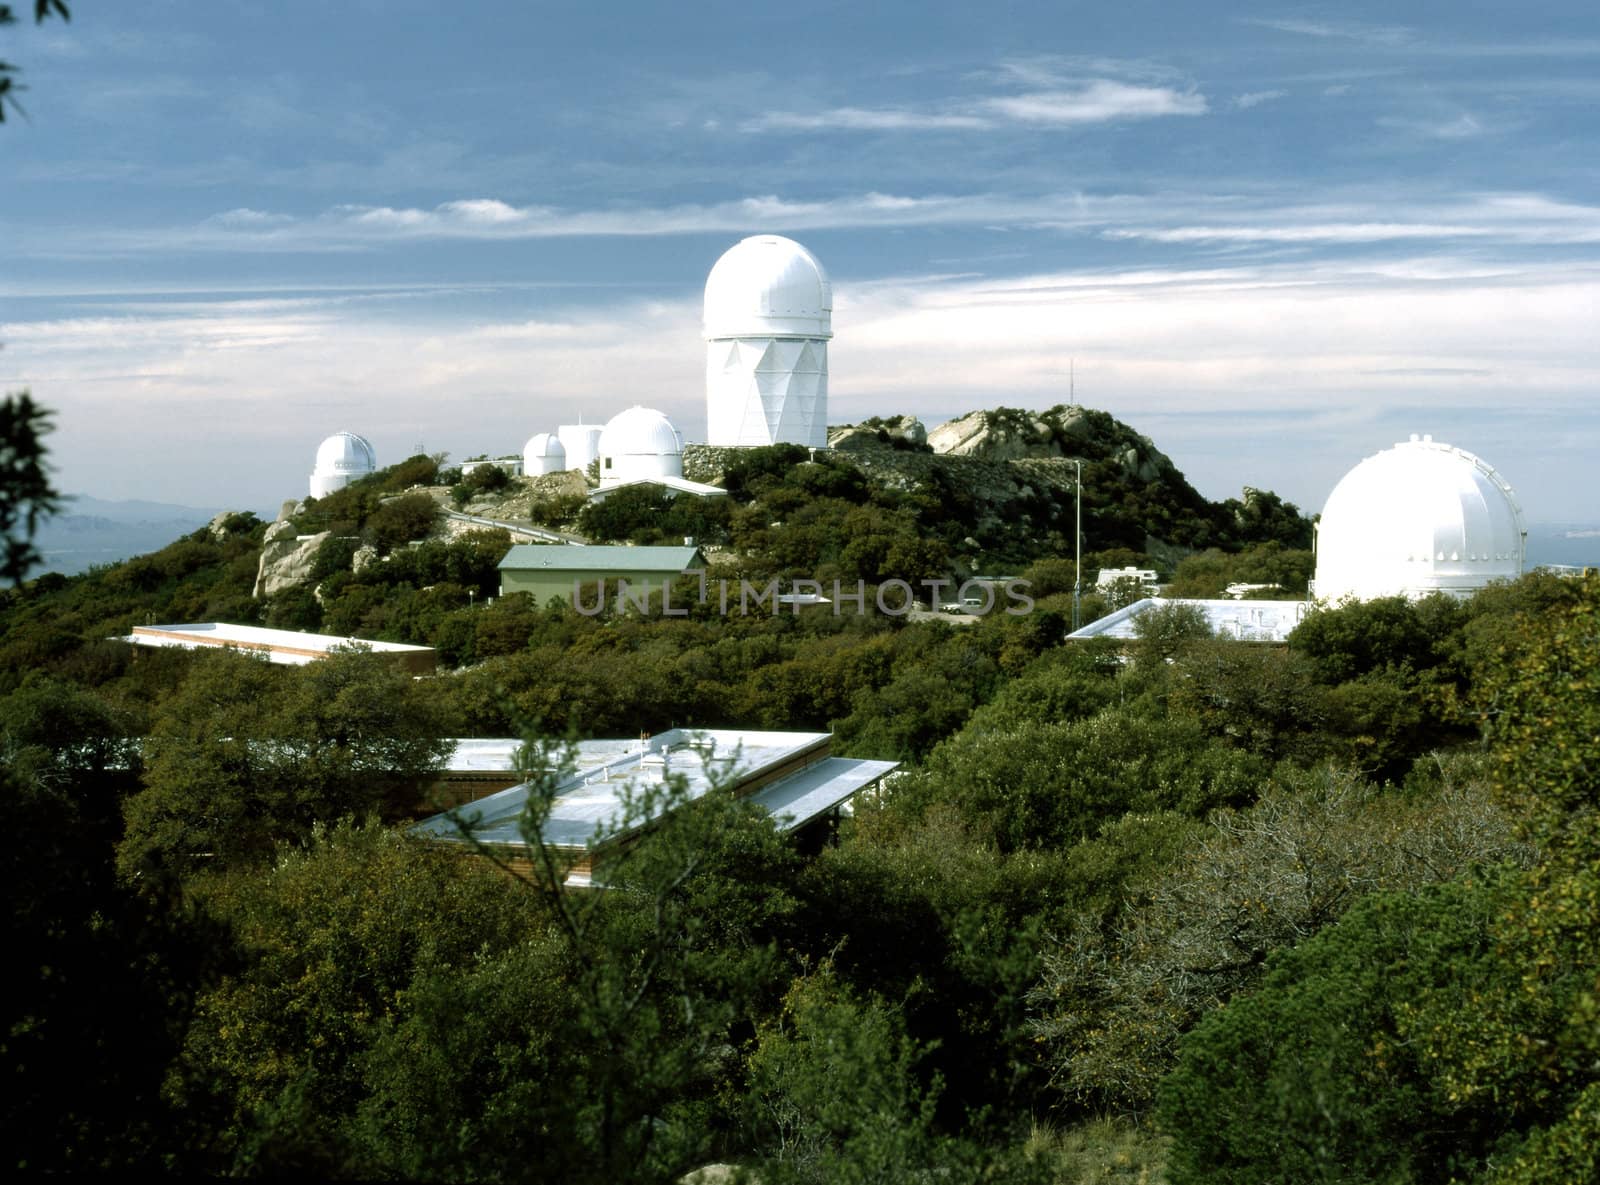 Kitt Peak Observatory by jol66